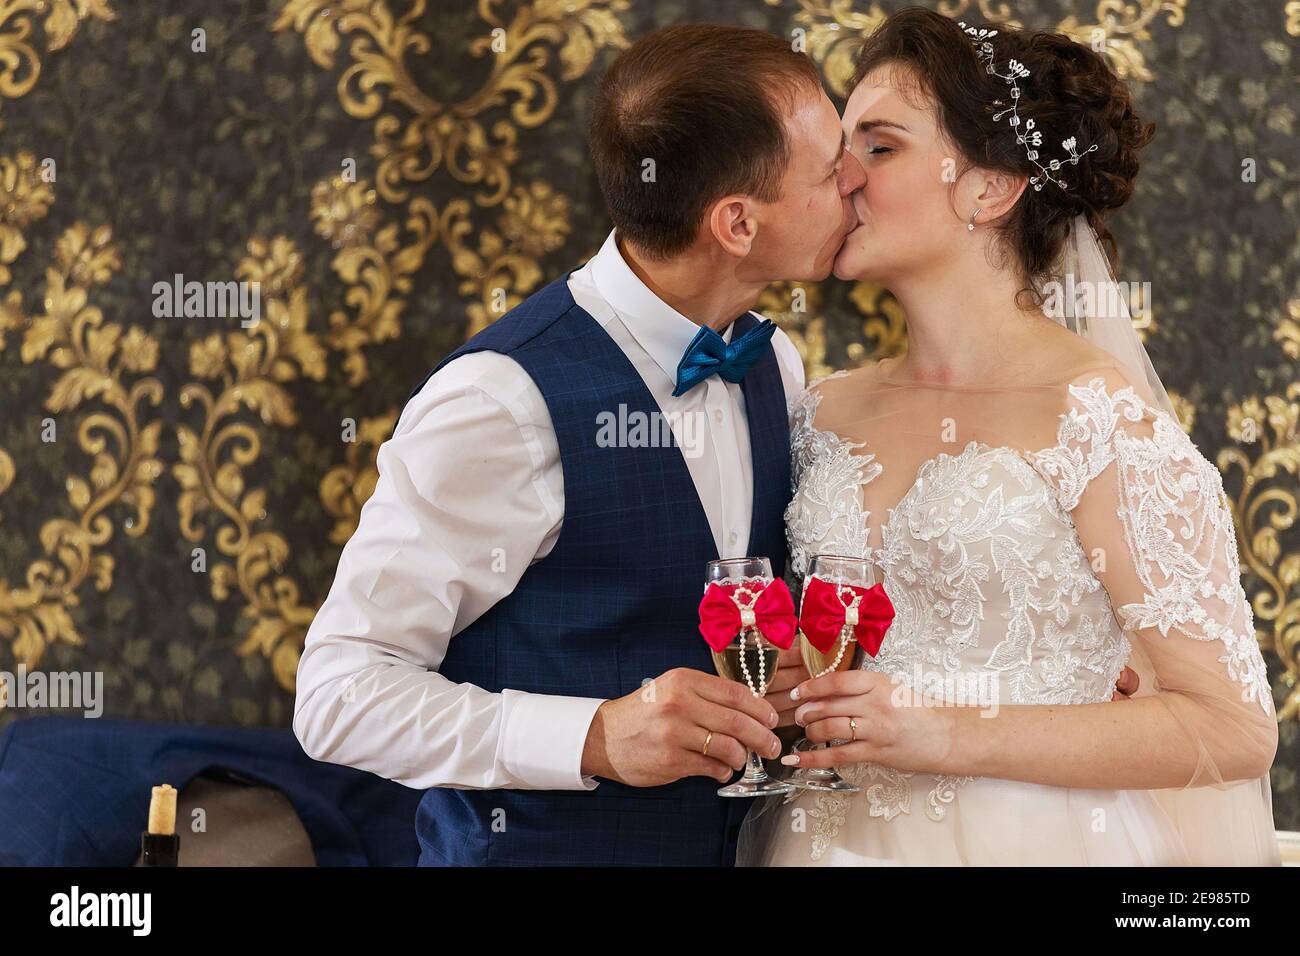 Die Braut und der Bräutigam küssen und tanzen in einem Restaurant, das Glück des Brautpaares bei der Hochzeitszeremonie, ein romantischer Kuss Stockfoto